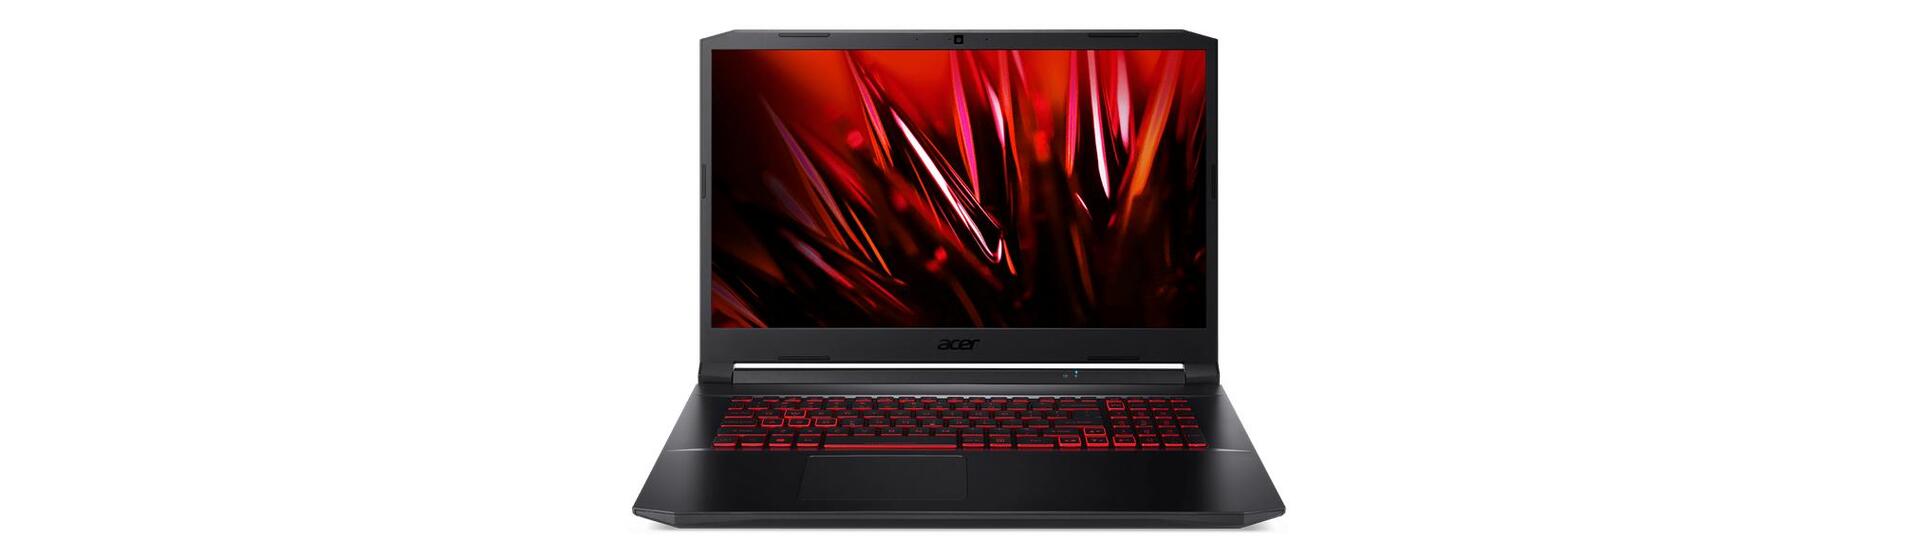 Promoção: Notebook Gamer Acer Aspire Nitro 5 AN517-54-59KR com 8